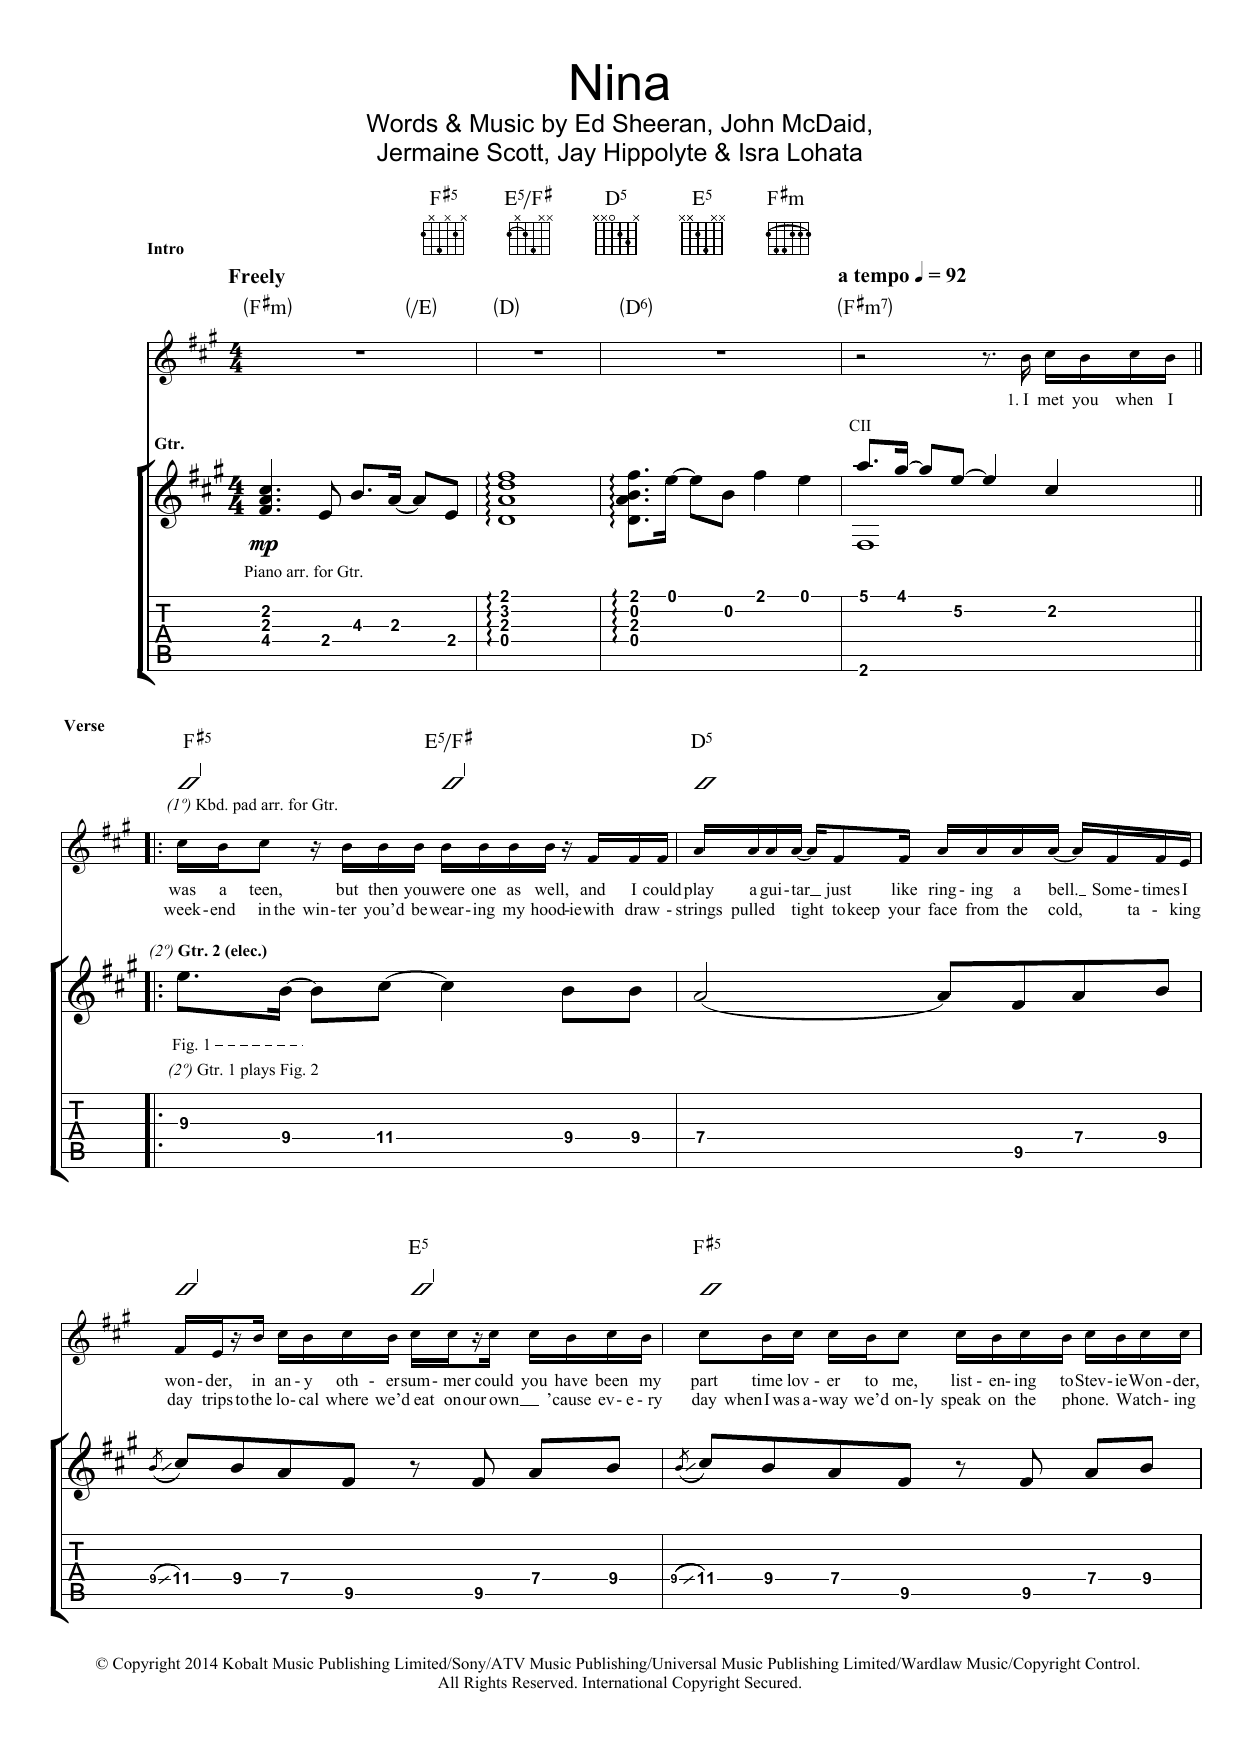 Ed Sheeran Nina Sheet Music Notes & Chords for Piano, Vocal & Guitar (Right-Hand Melody) - Download or Print PDF